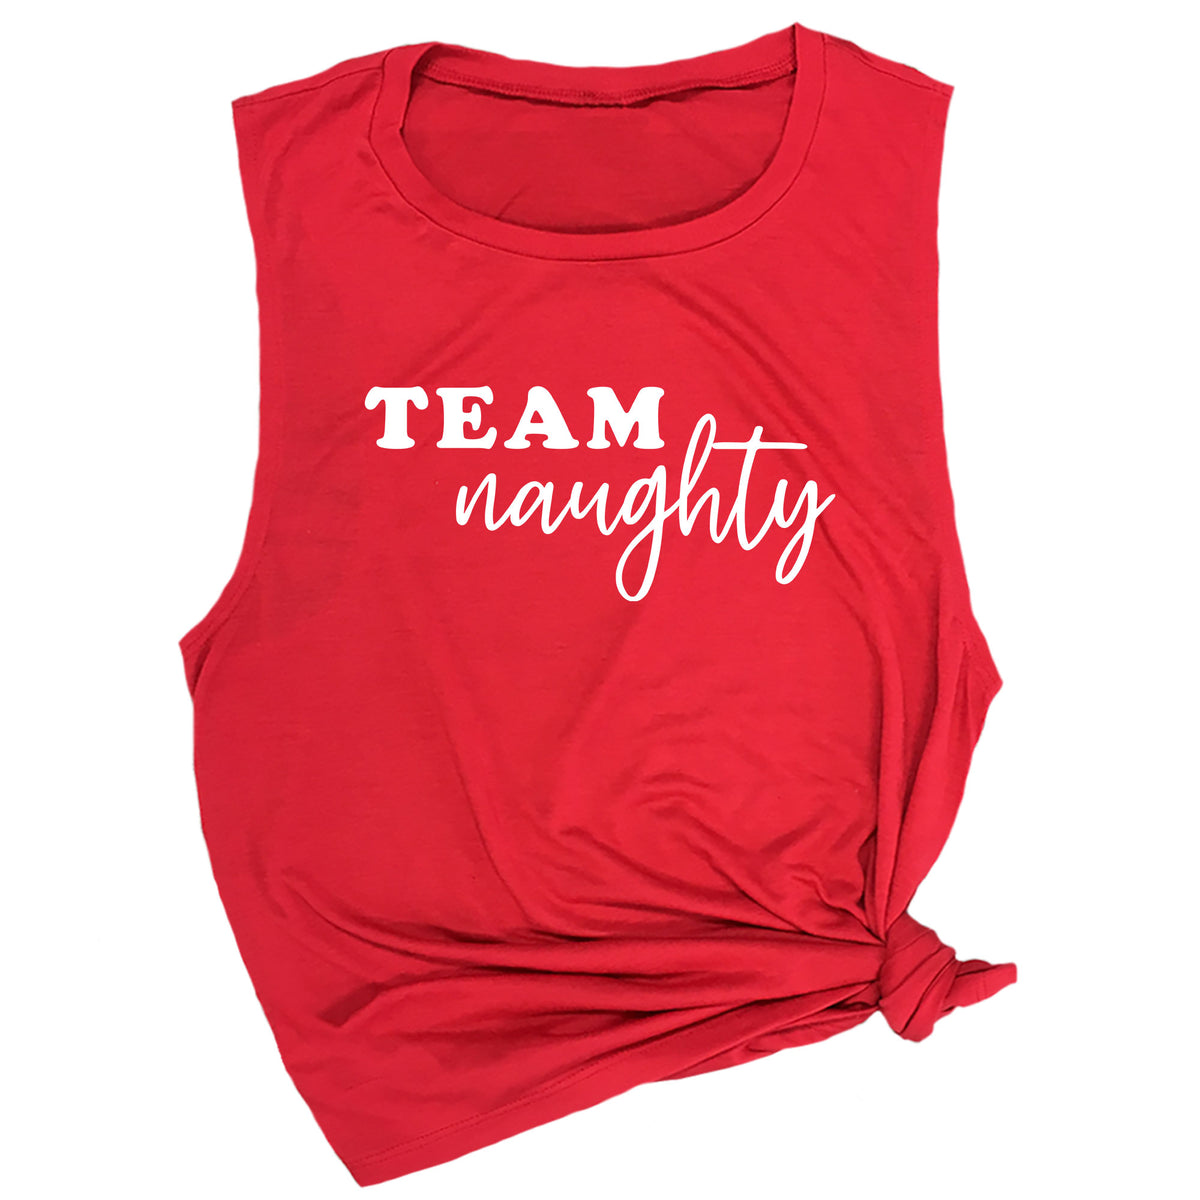 Team Naughty / Team Nice-ish Muscle Tee